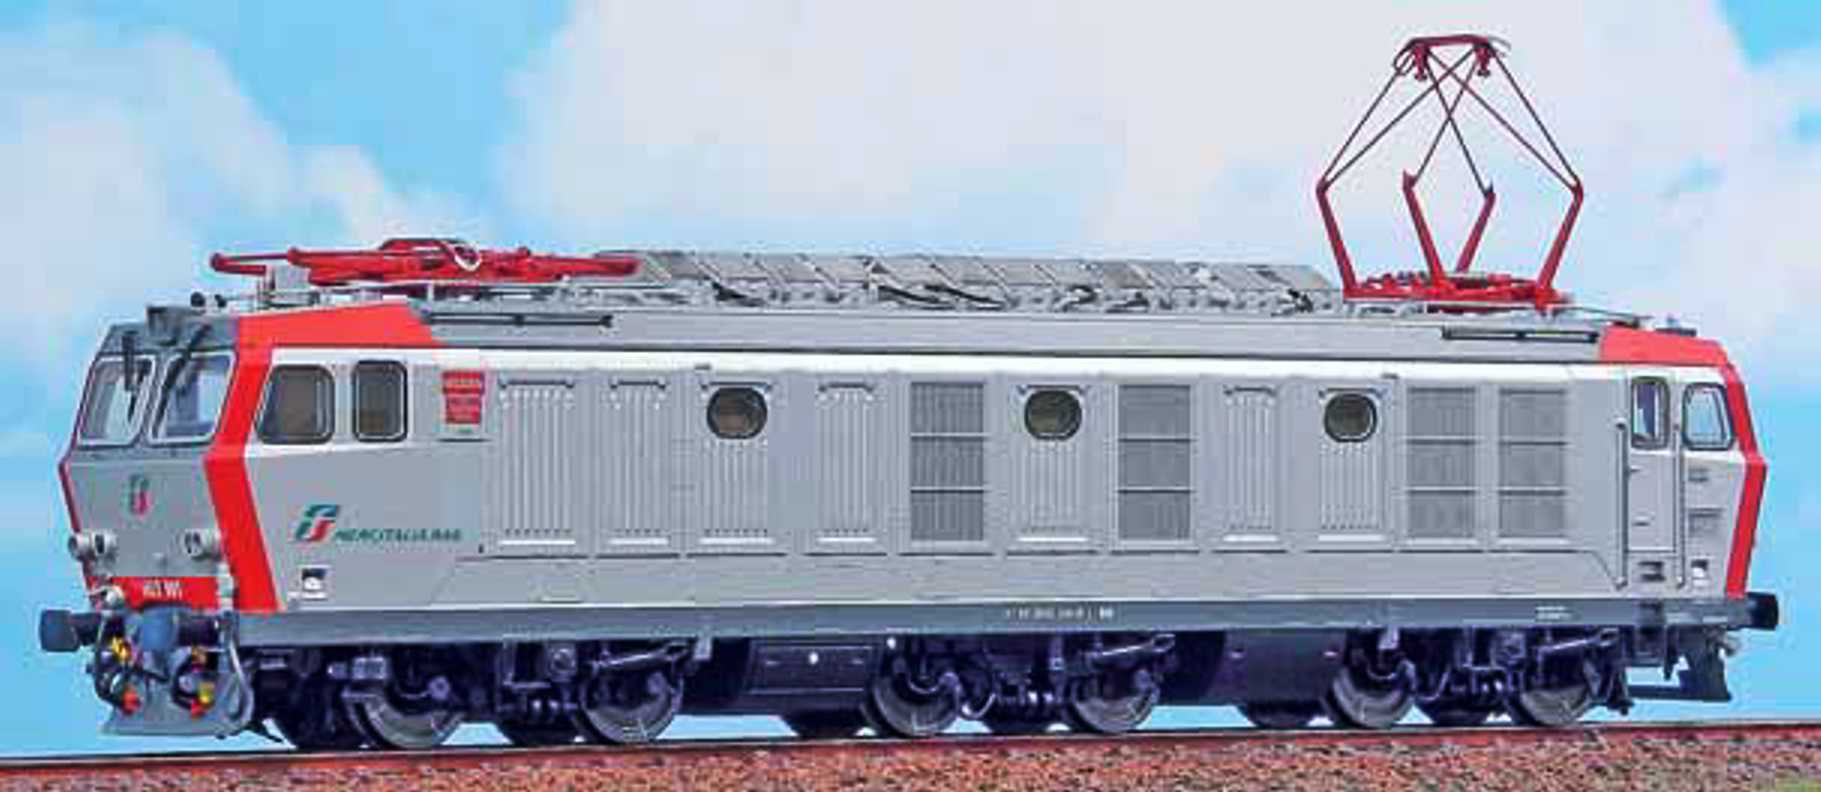 在庫高評価アクメ ACME 60300 Locomotiva E 444 013 FS Origine A.C.M.E HOゲージ 鉄道模型 海外 列車 電車 車両 中古 良好 M6515017 その他